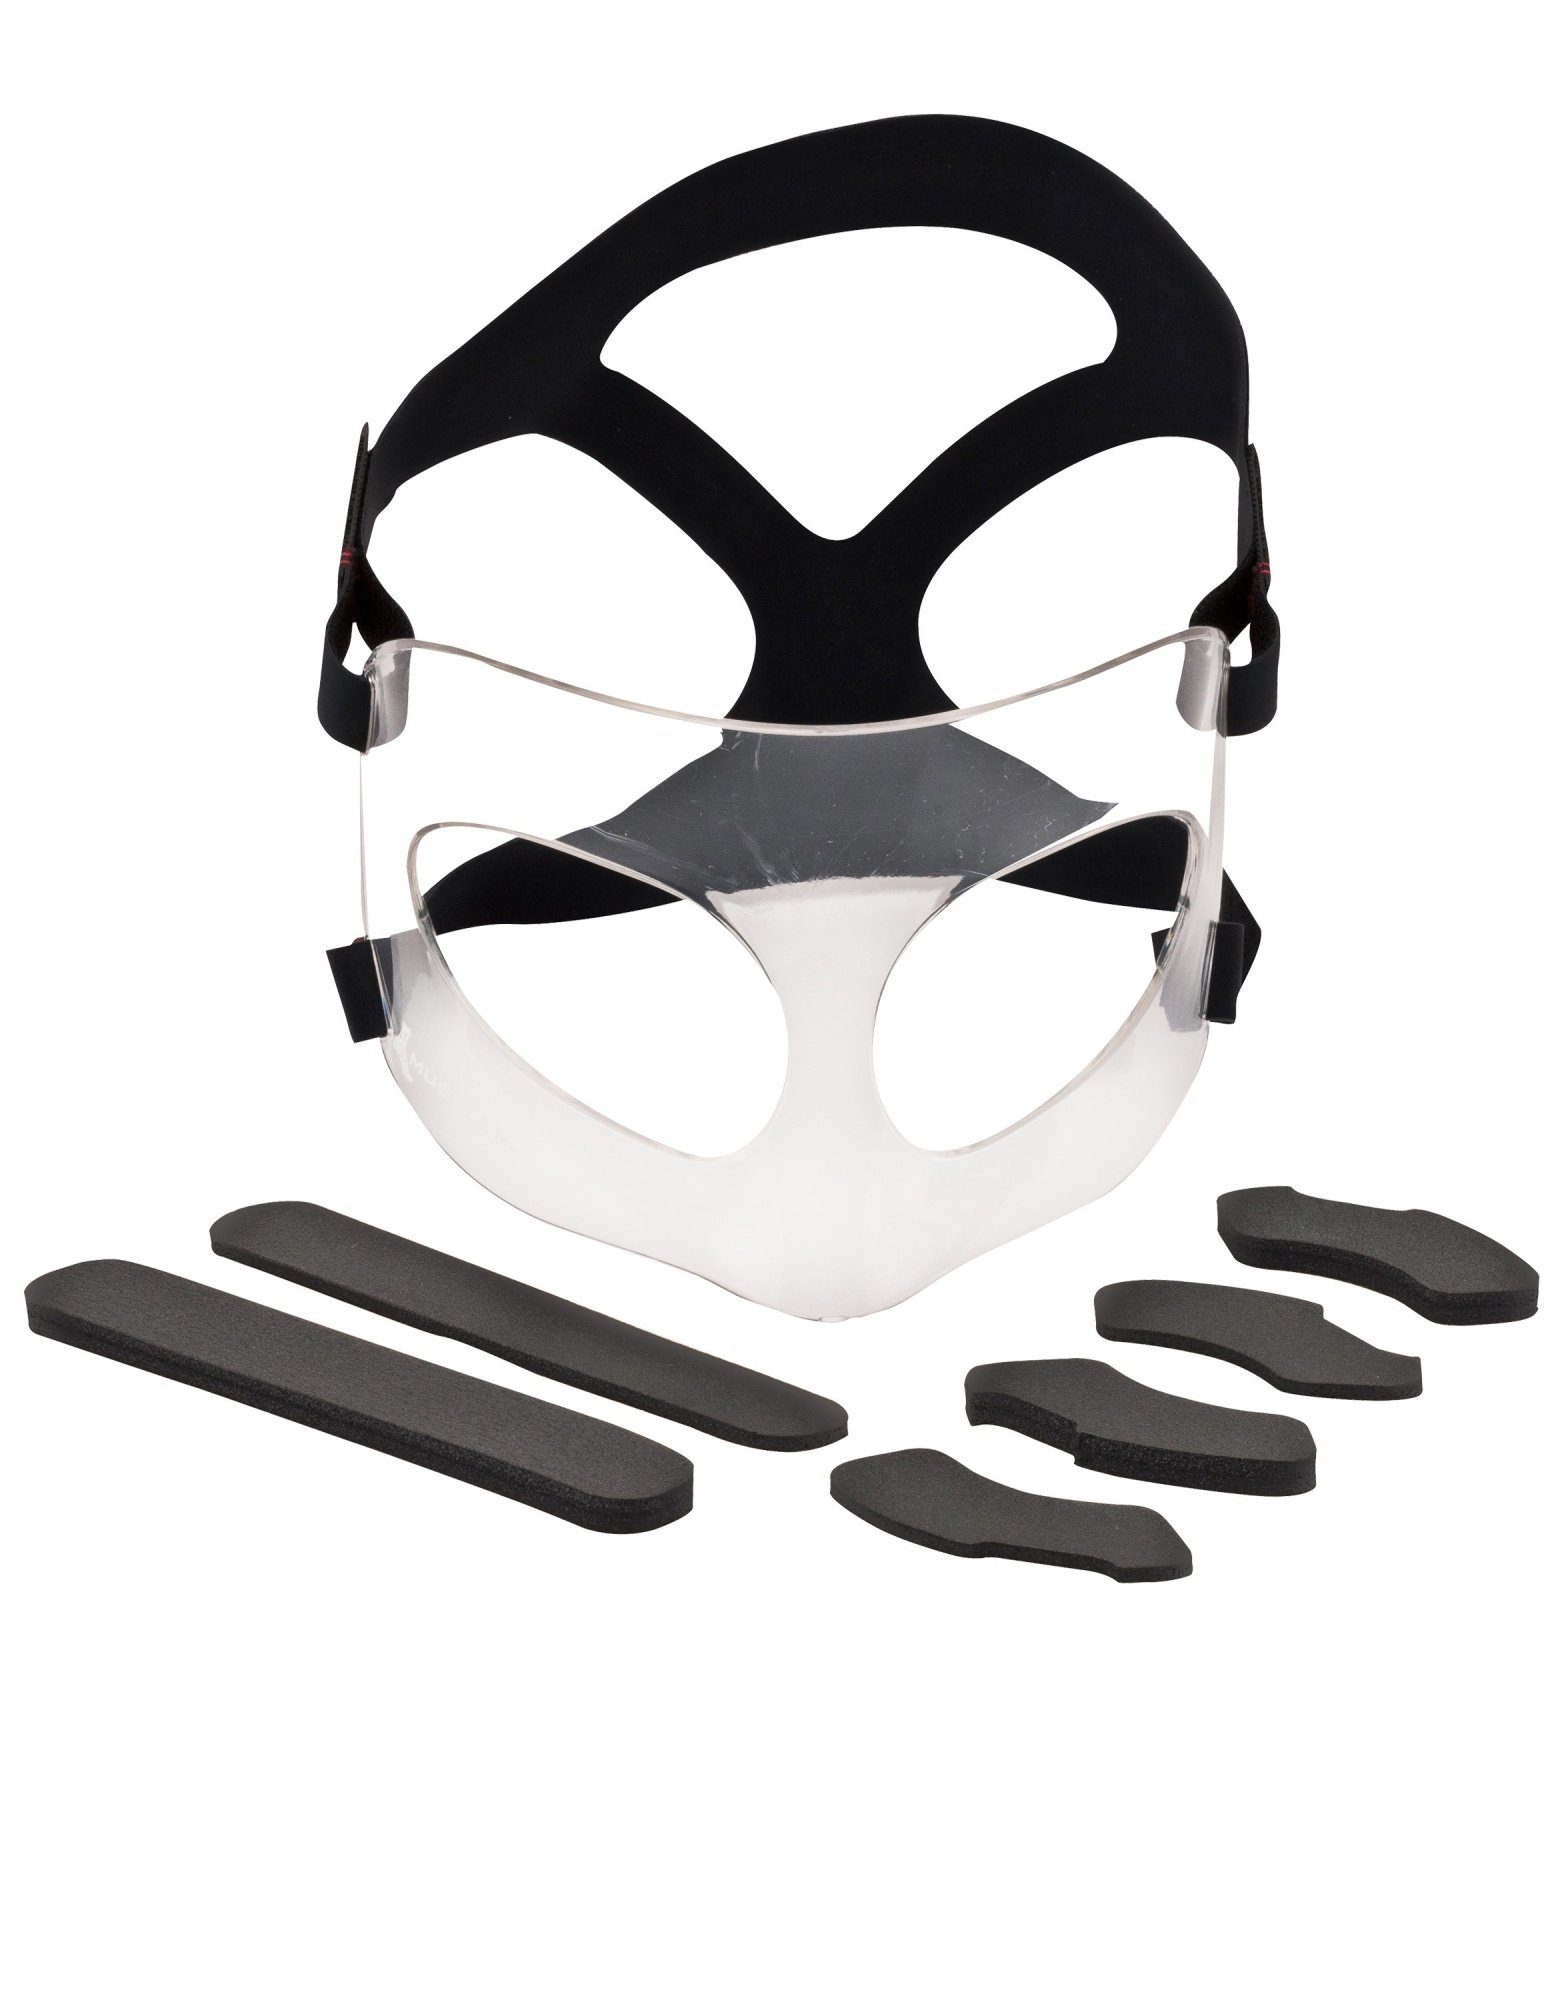 Schaumstoffpolster, 6 Gesichtsschutz verstellbares Sports Mueller Kopfband Punkten Nasen-und an Kopfschutz 4 Medicine Maximum,